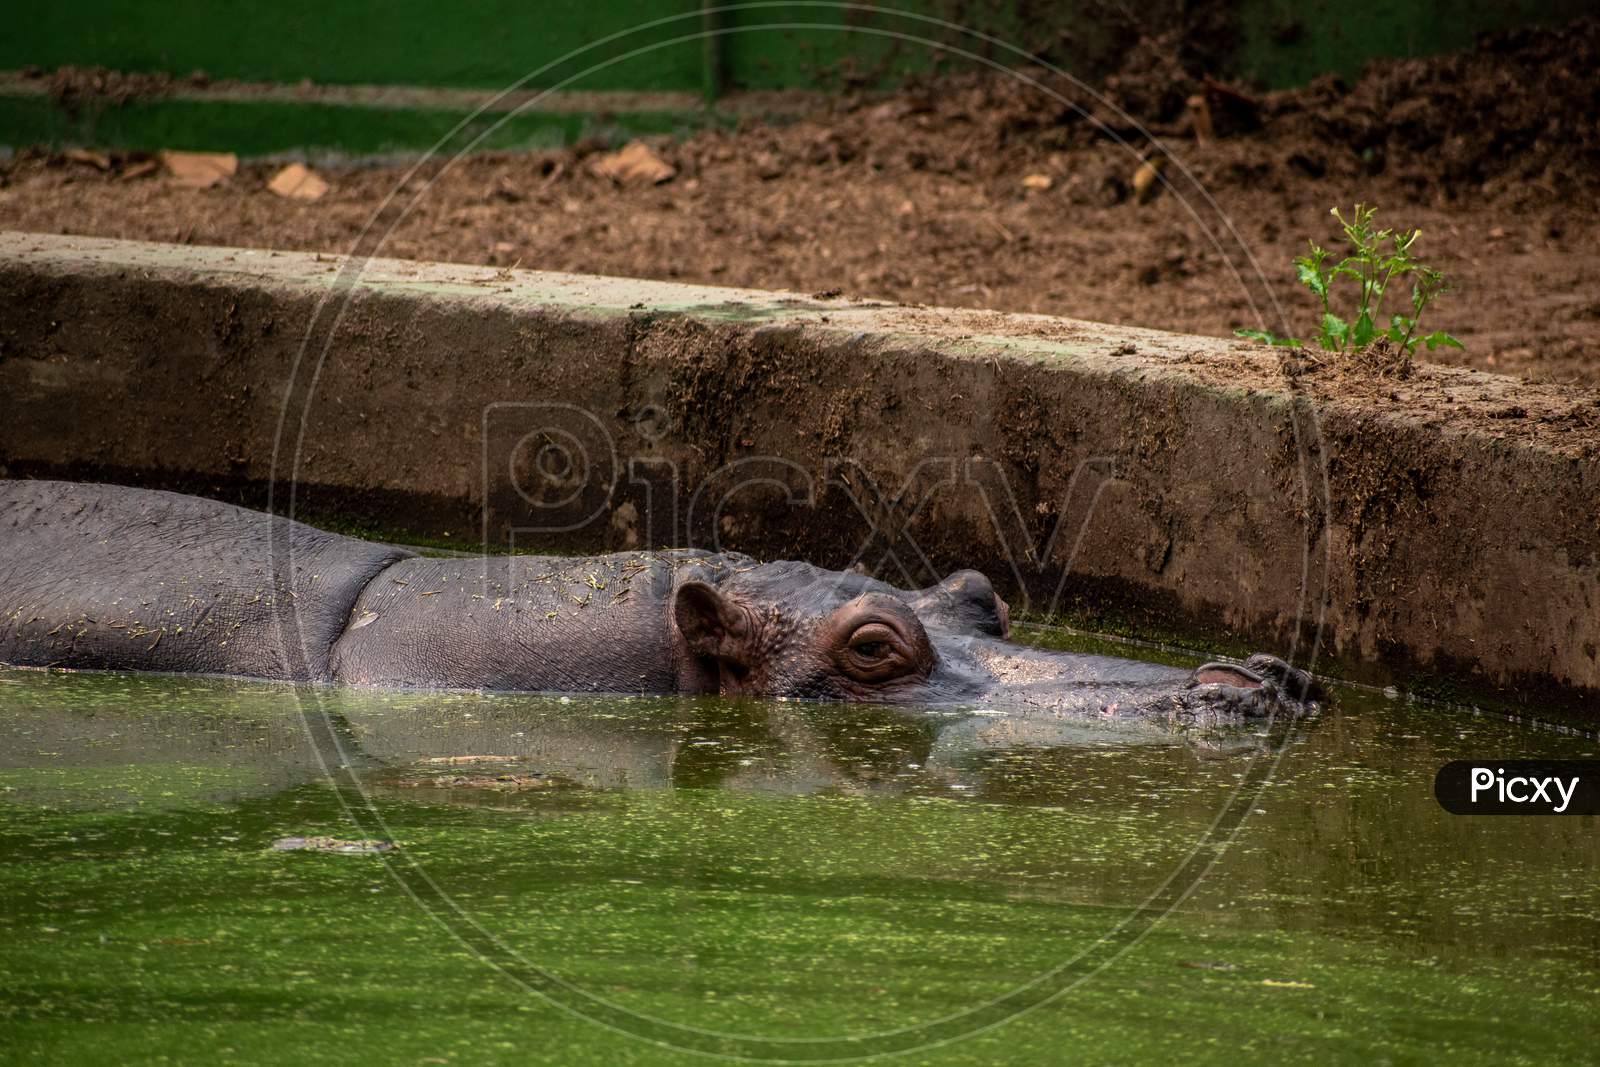 hippopotamus at Alipore zoo, Kolkata, West bengal.